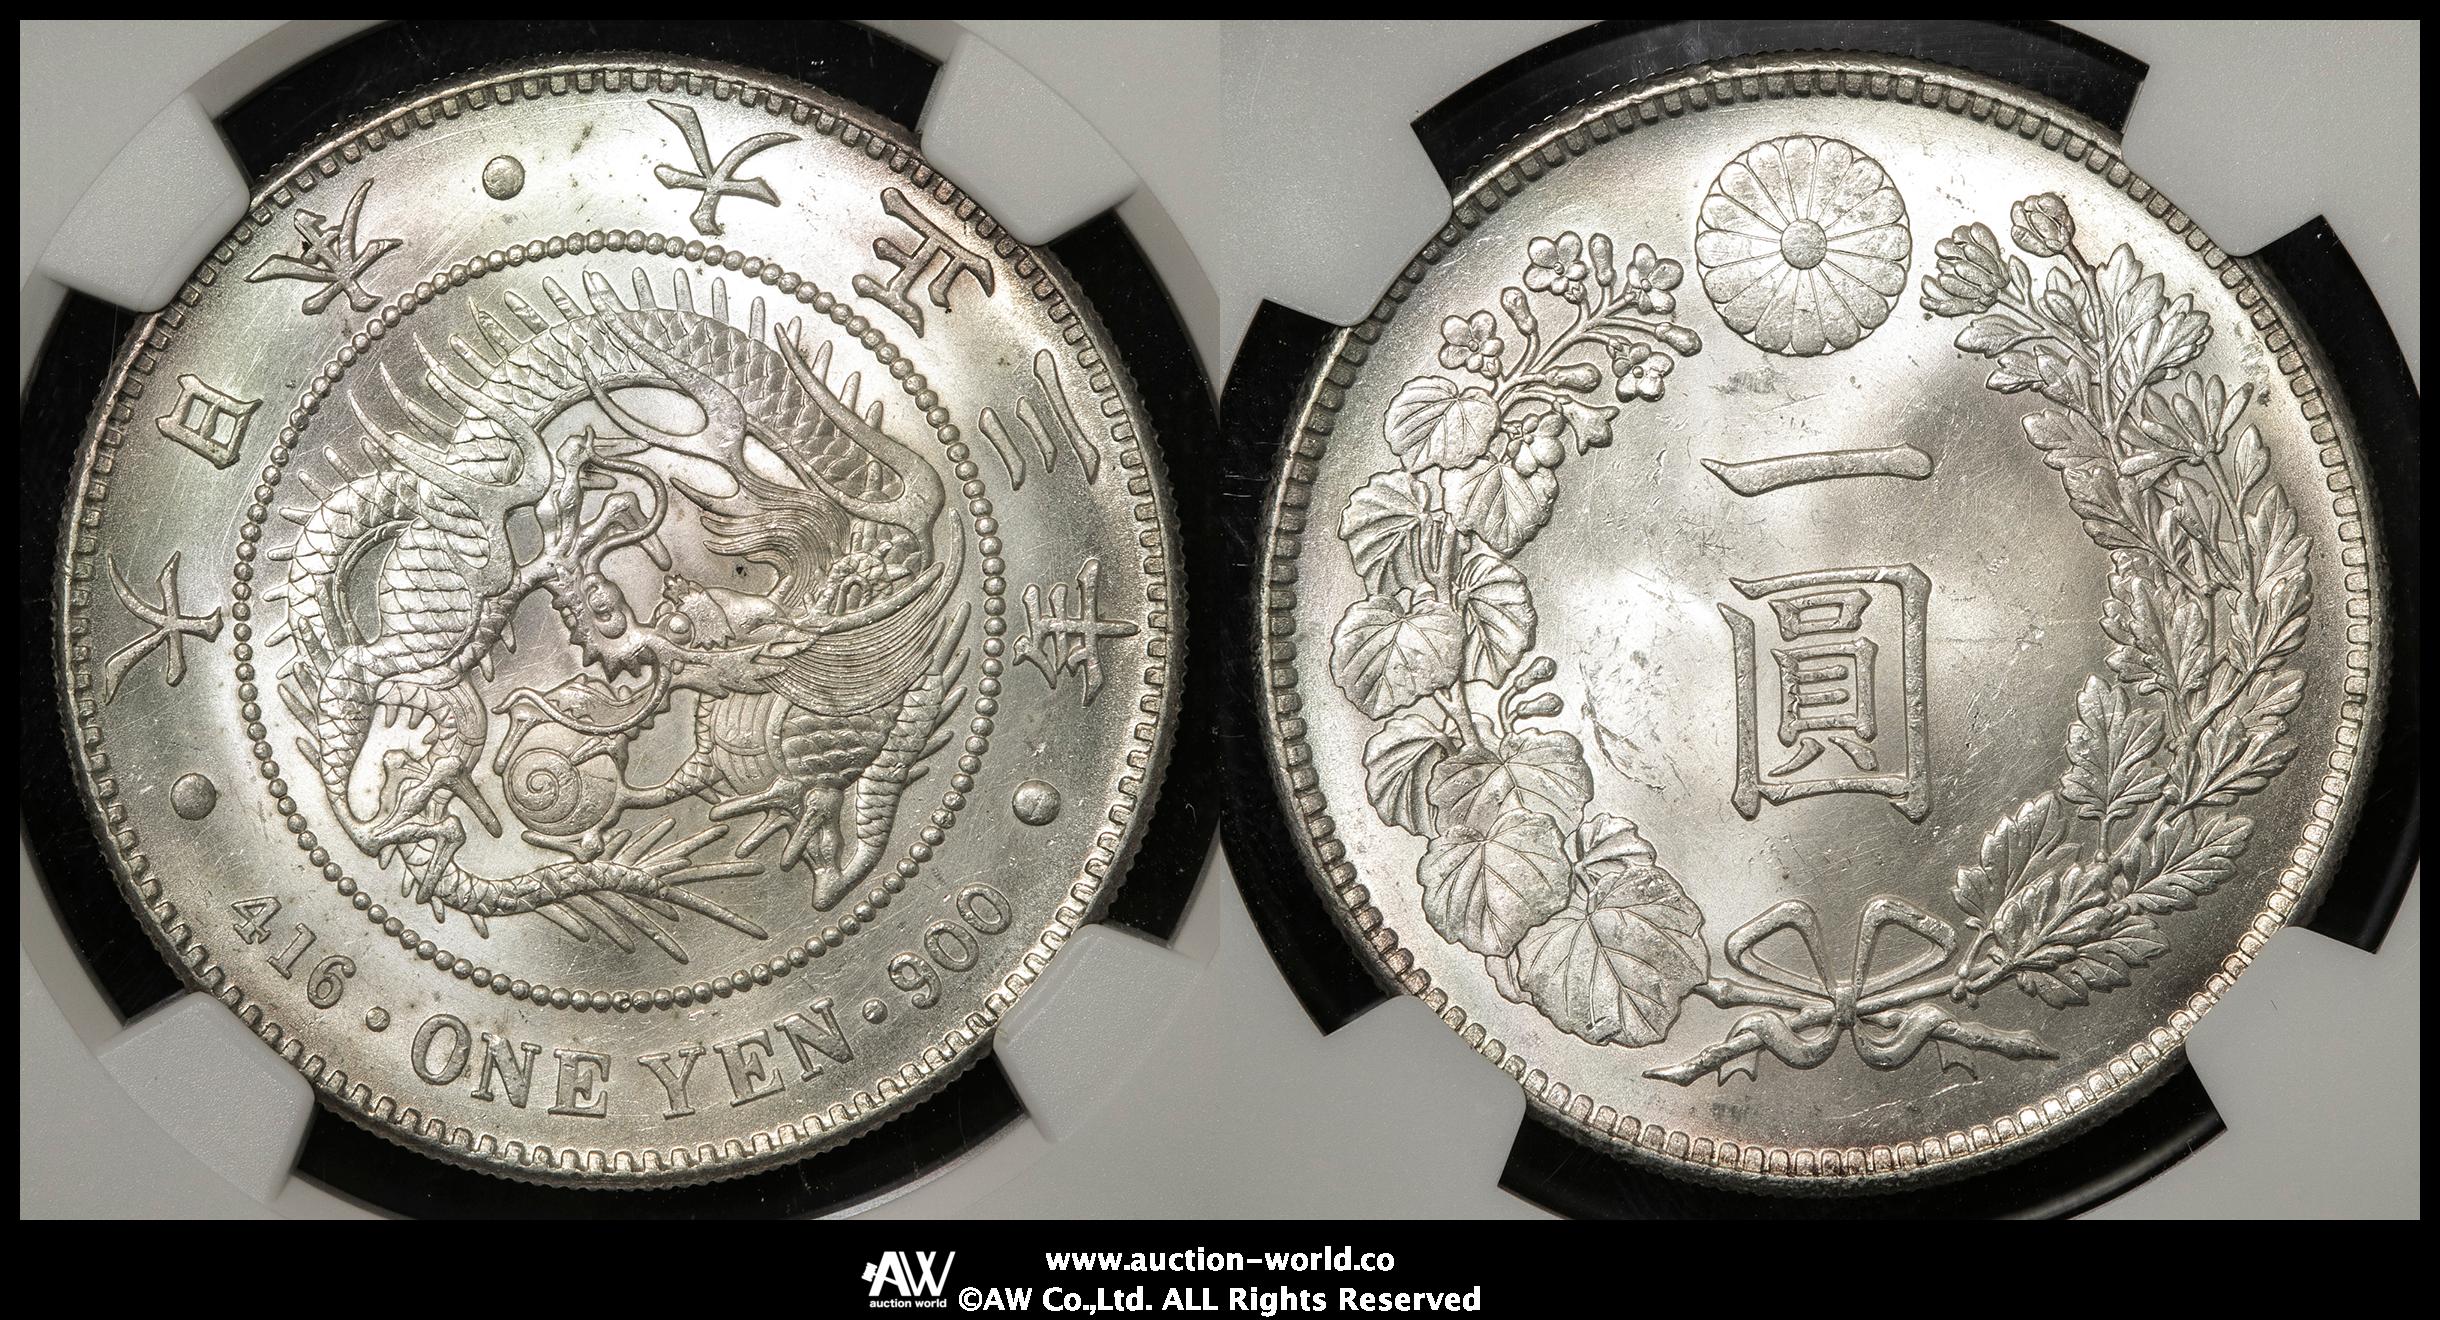 大正3年 1914 日本 1円銀貨 NGC MS63